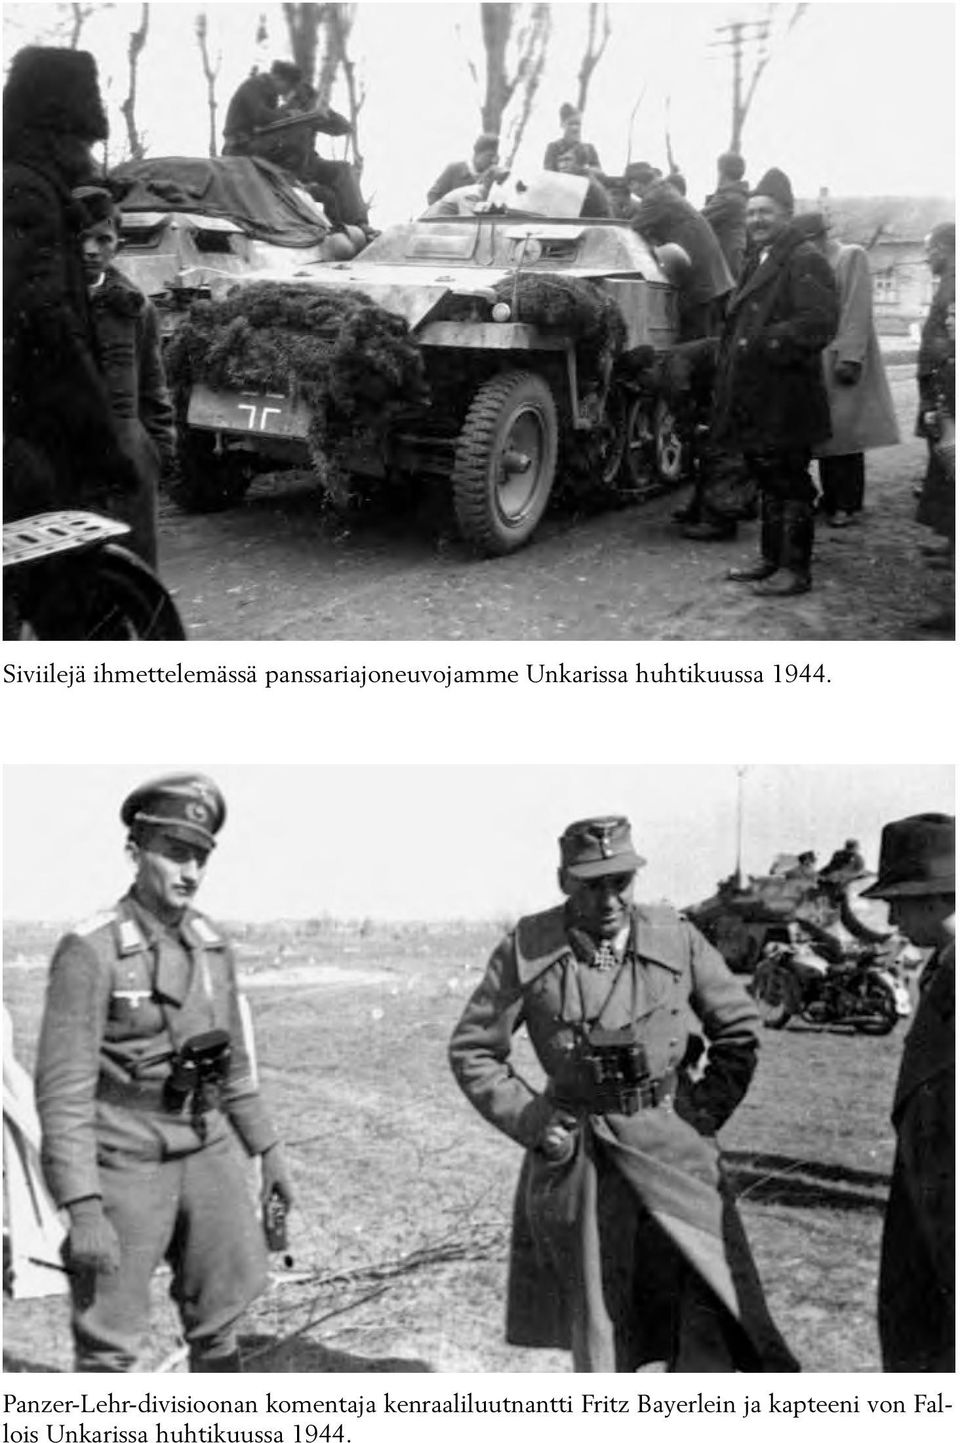 Panzer-Lehr-divisioonan komentaja